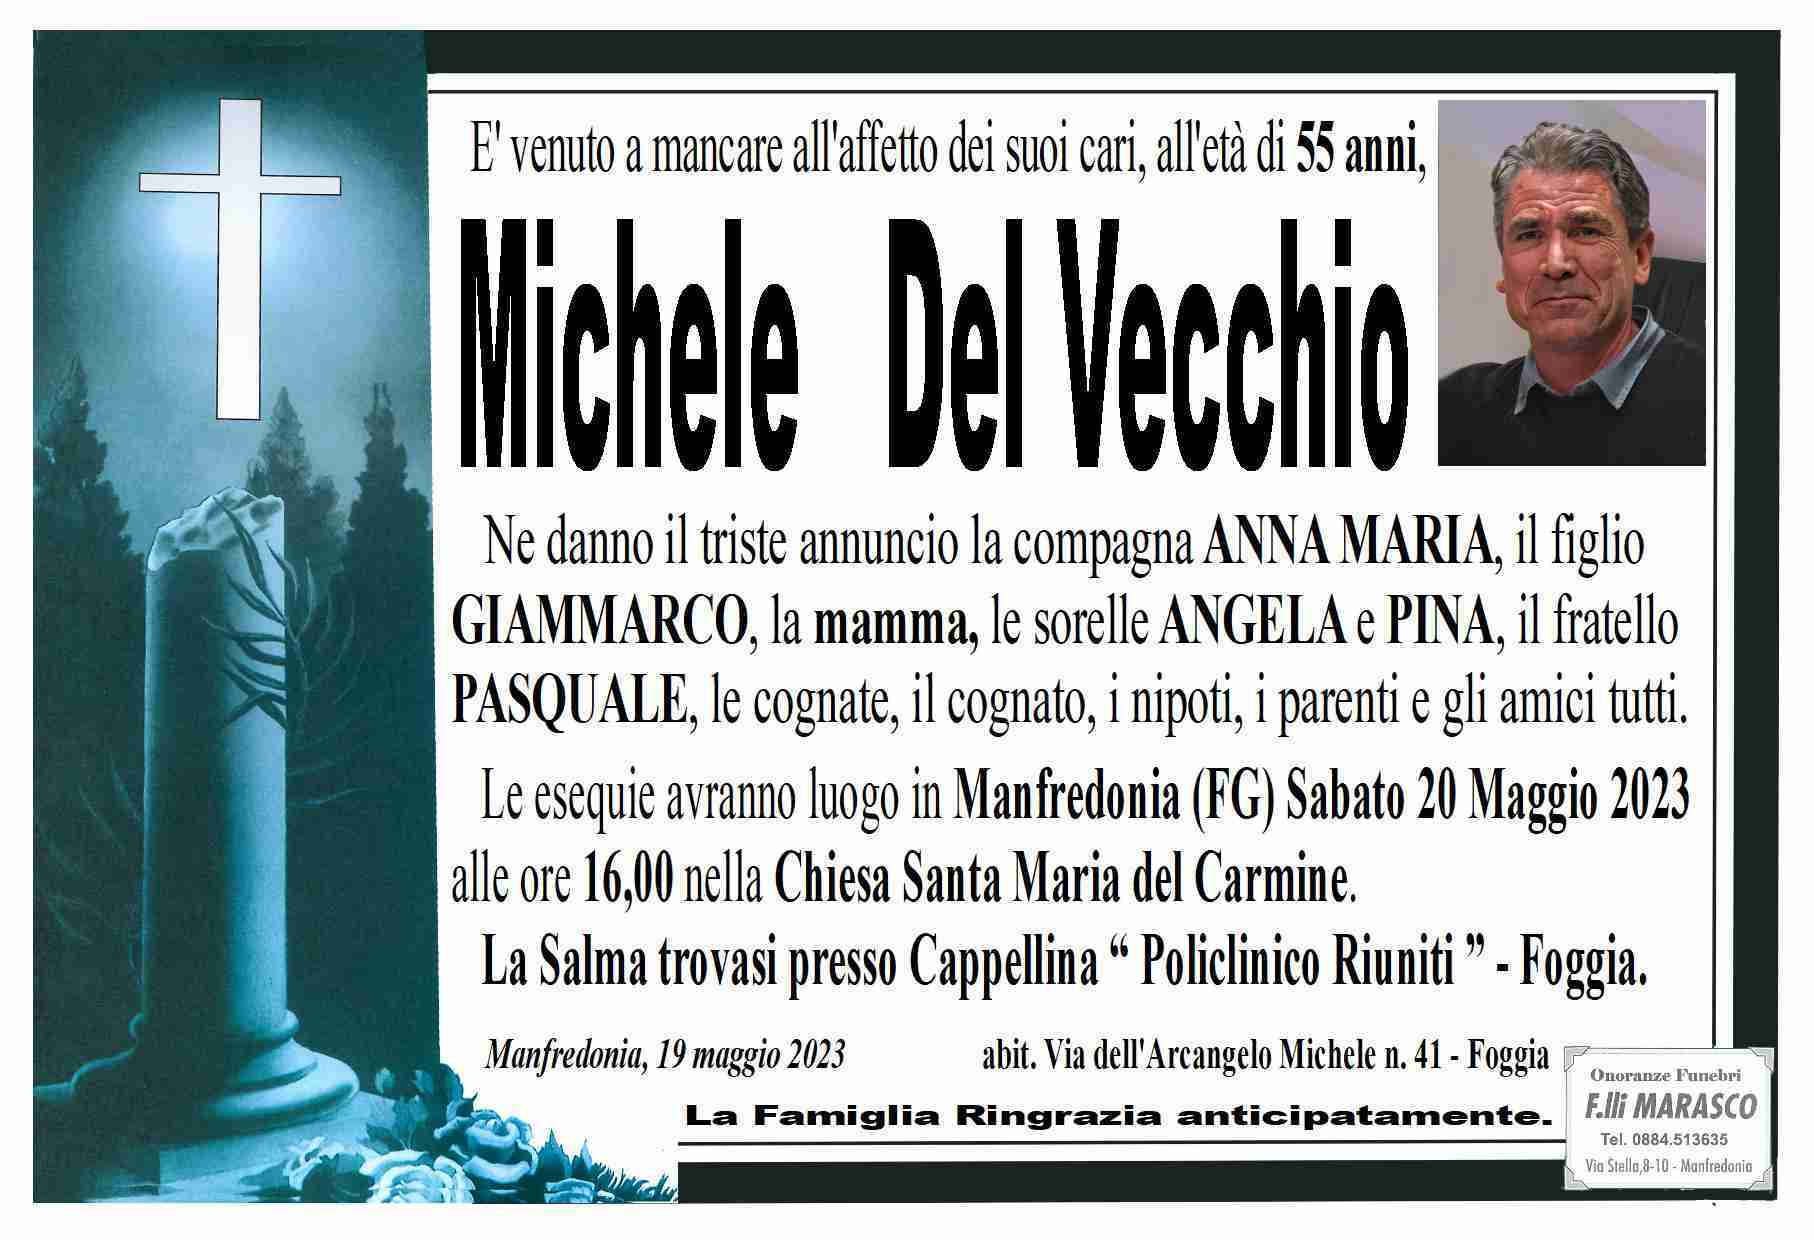 Michele Del Vecchio